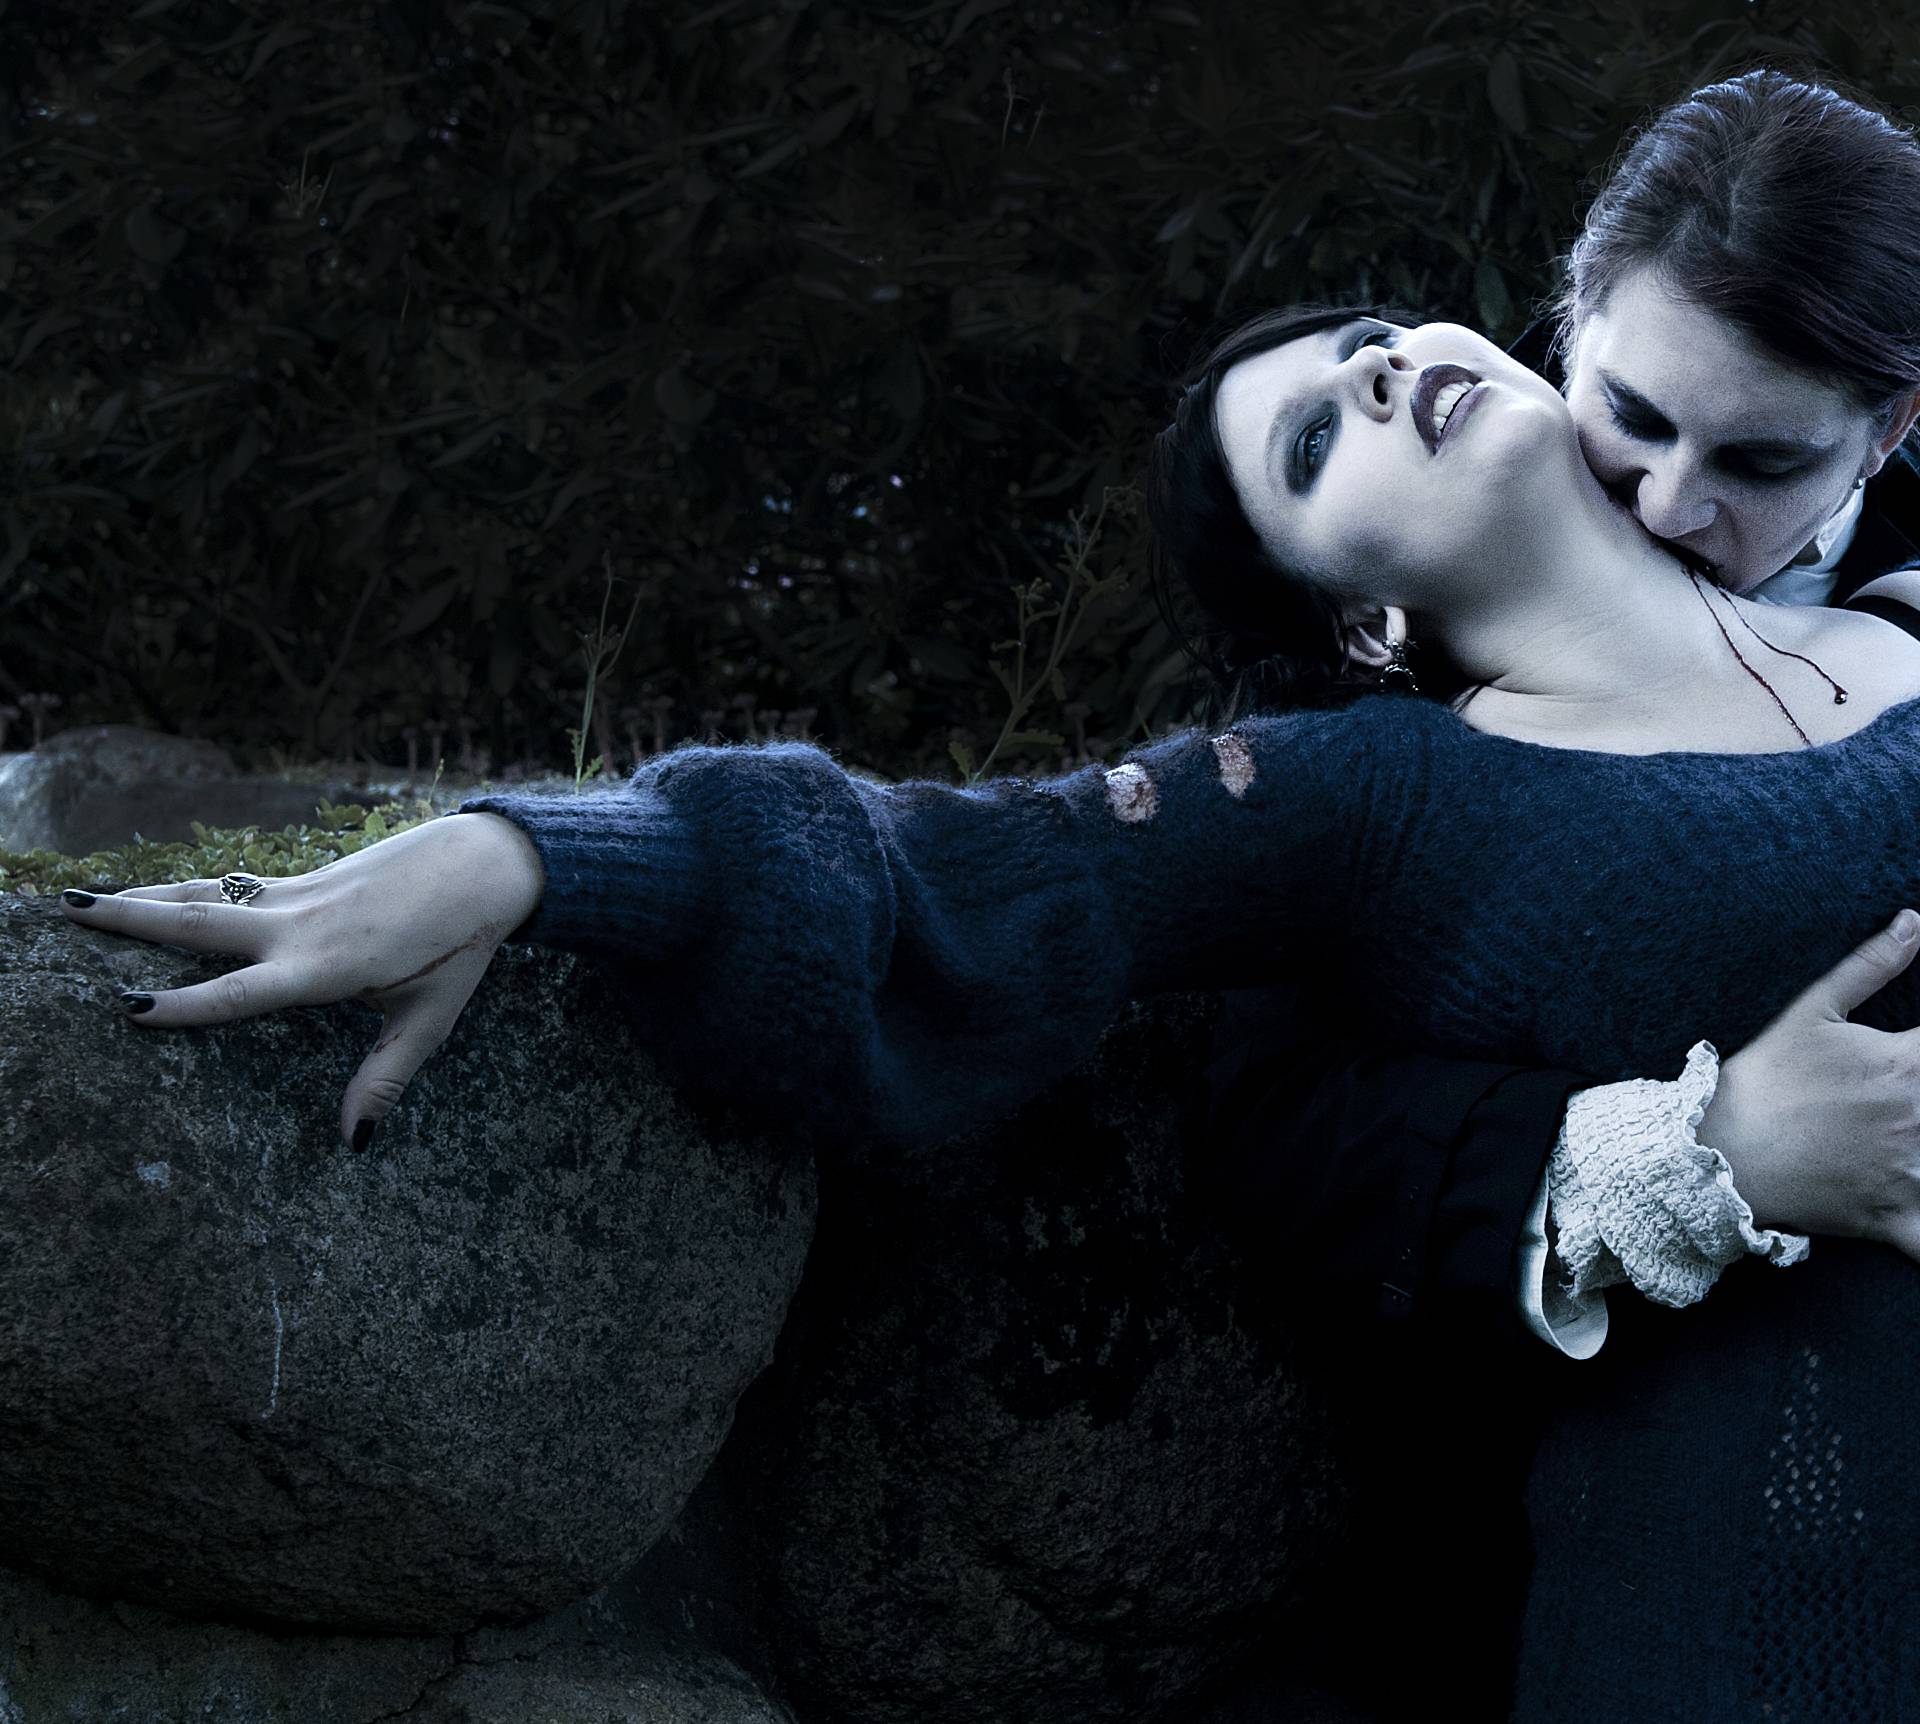 Seksualni vampiri: Odmah ćete osjetiti njihov šarm, zbunit će vas i šokirati, ali željet ćete još